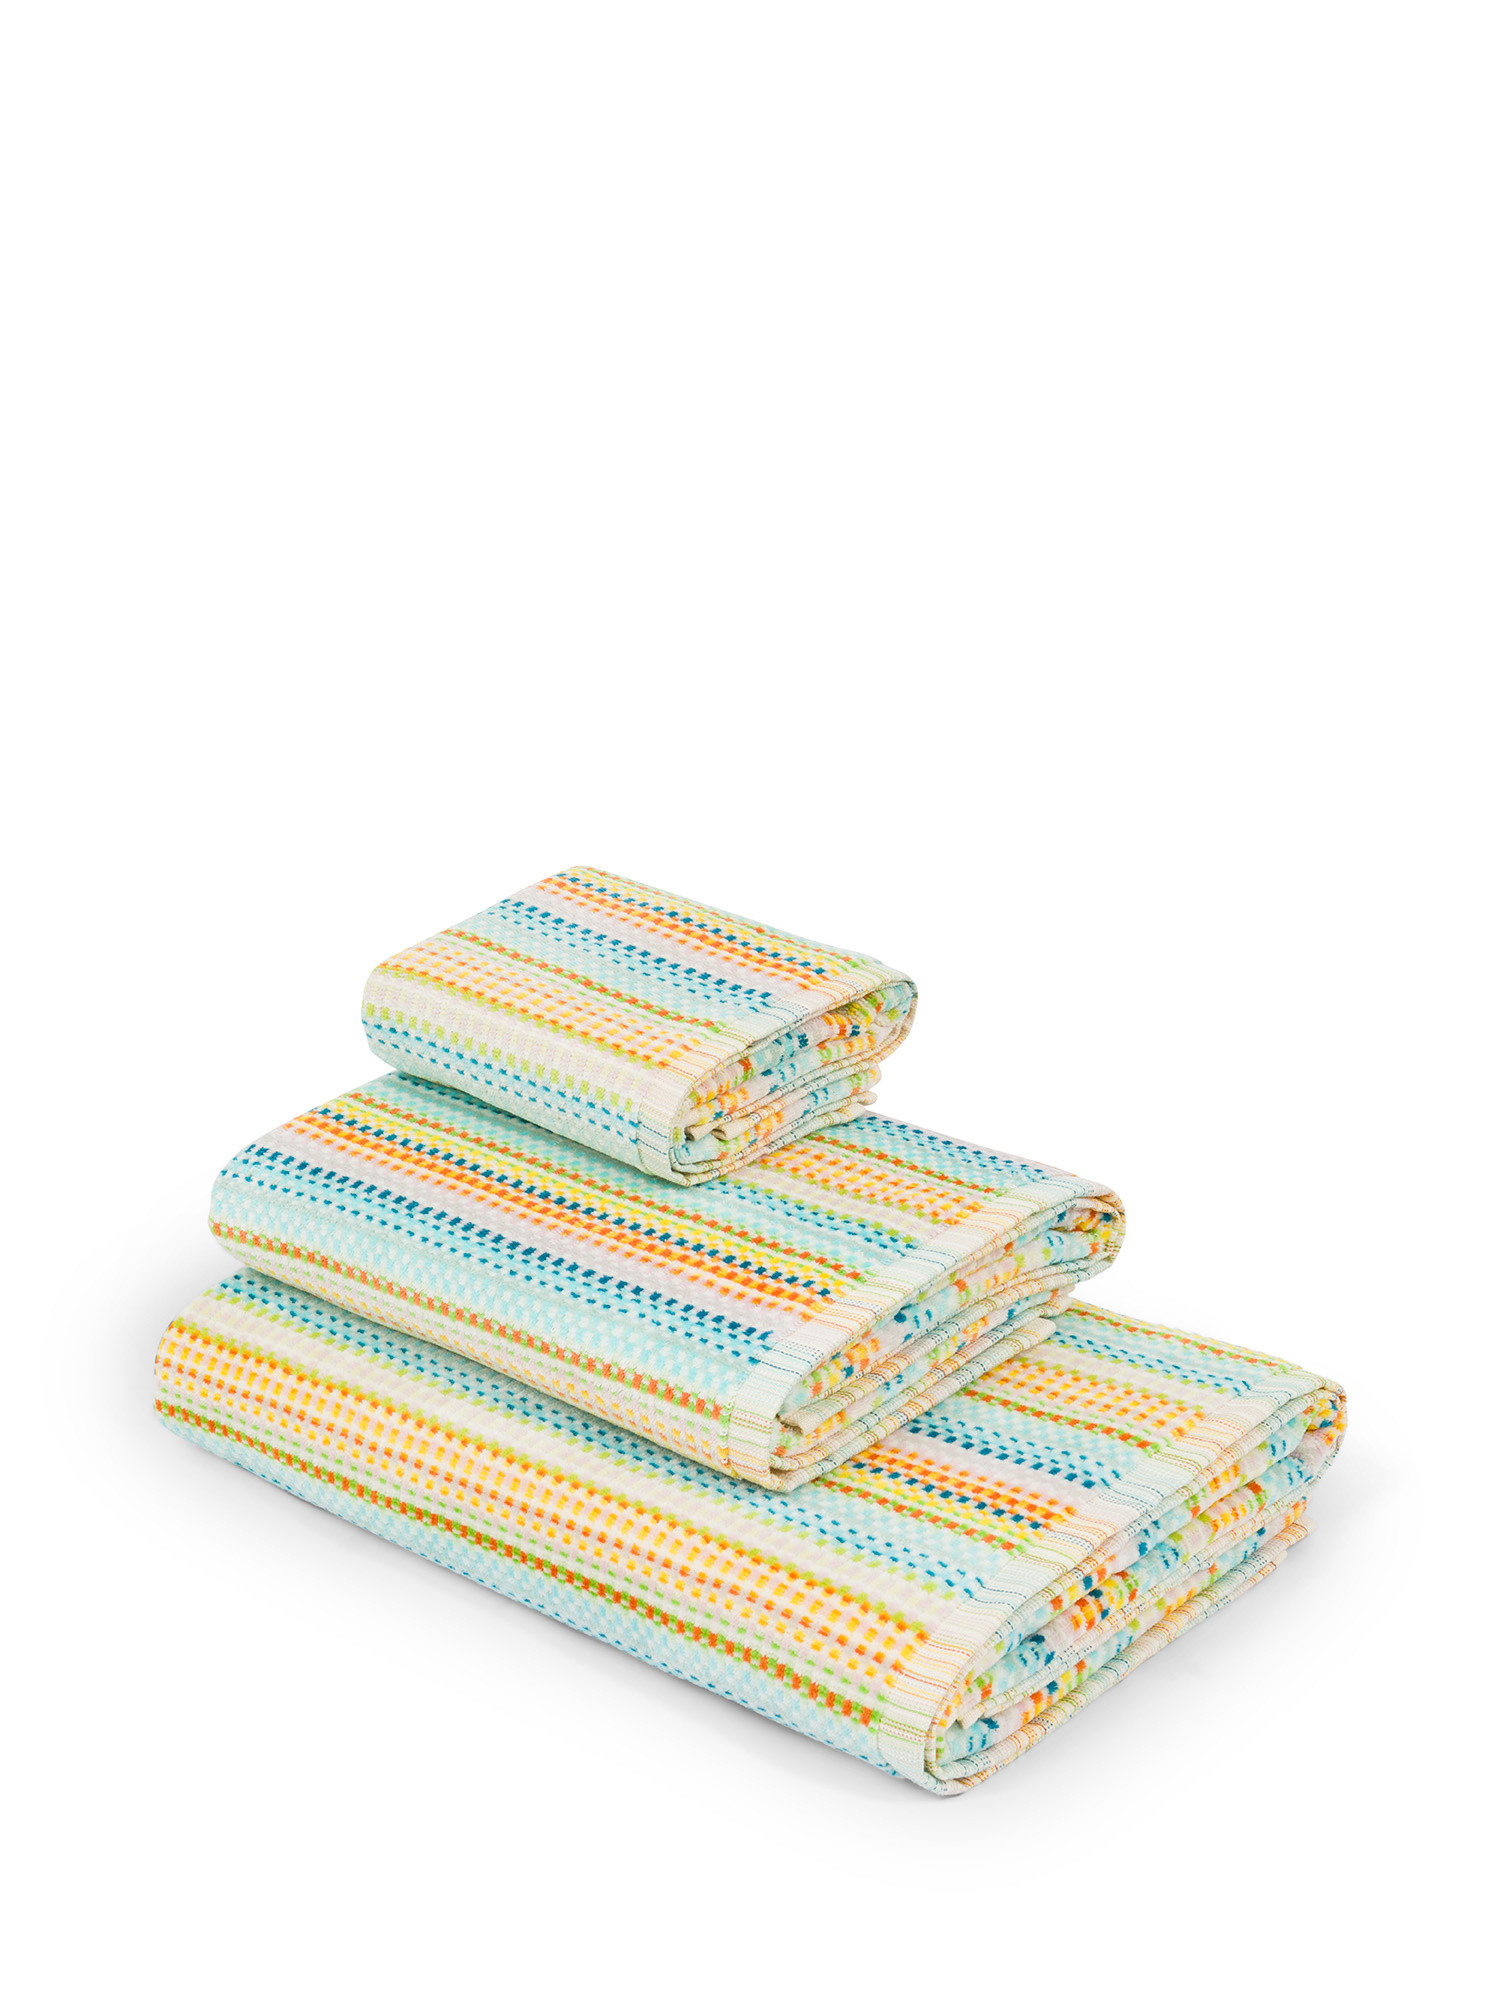 Asciugamano in spugna di cotone motivo righine, Multicolor, large image number 0